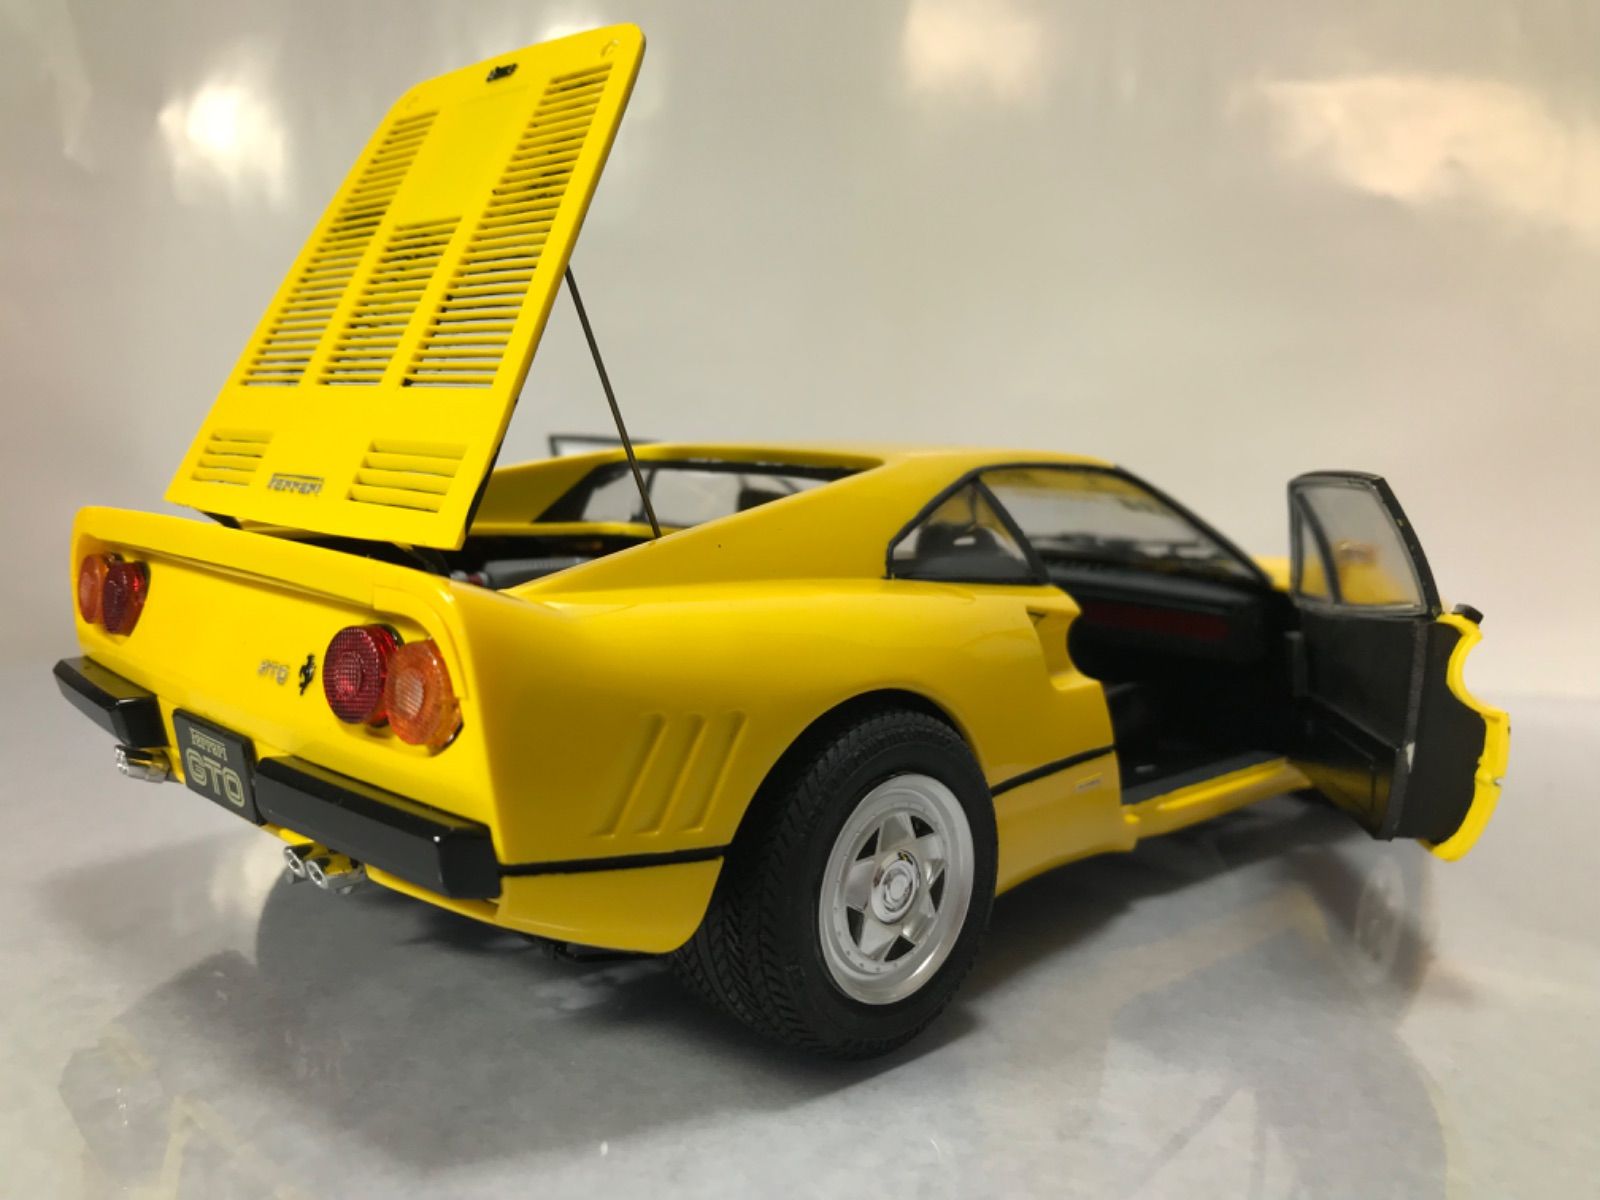 フジミ模型 1/16 フェラーリ 288ＧＴＯイエロー塗装 完成品 ケース付き 